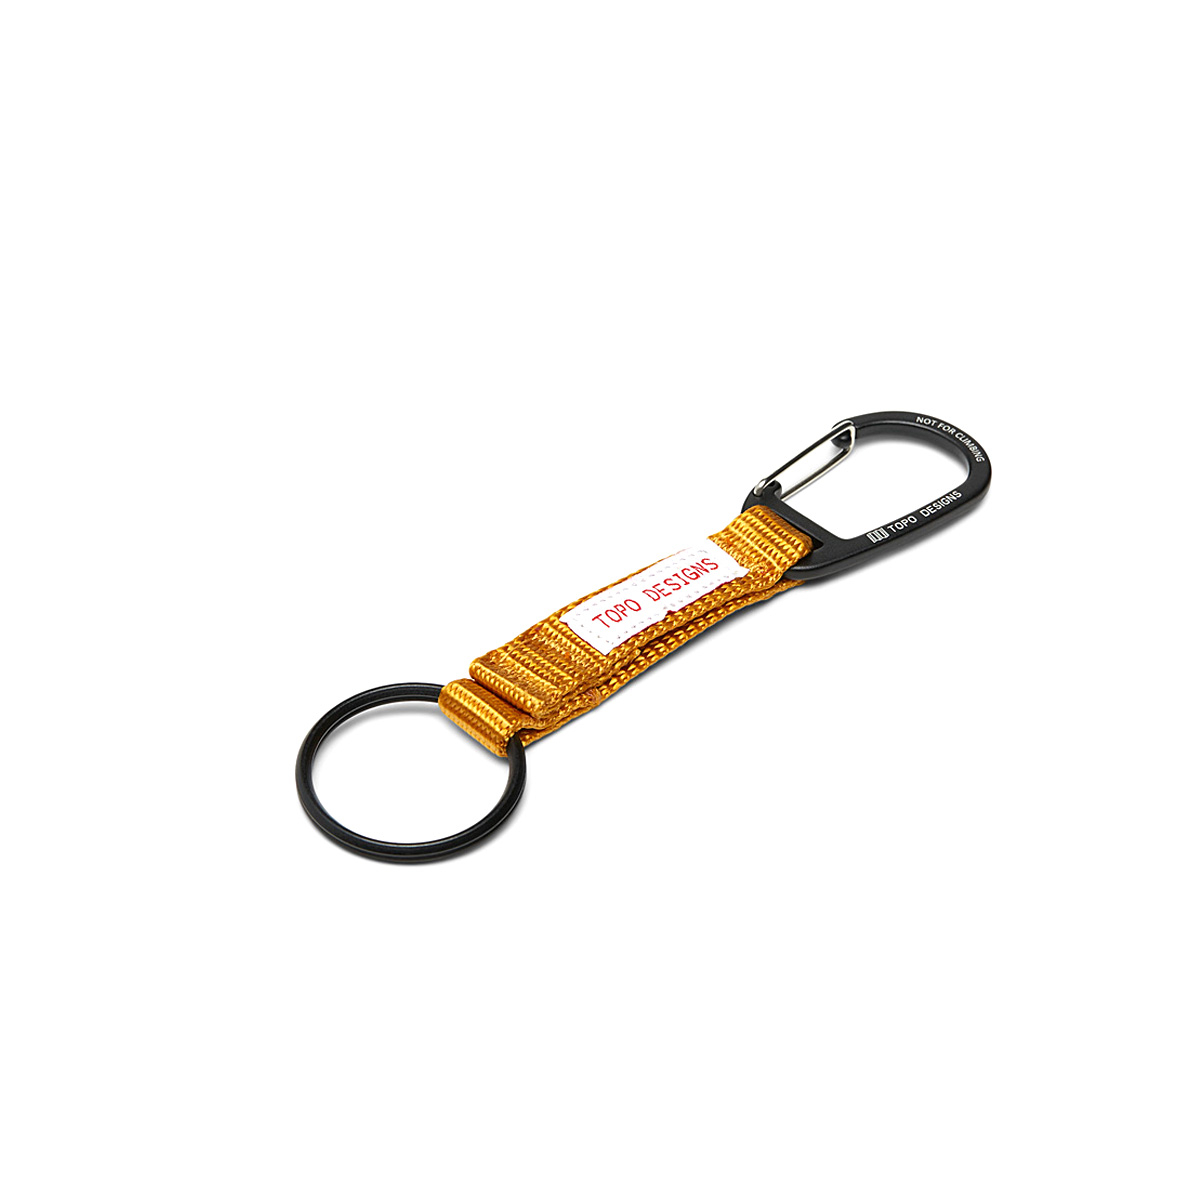 Topo Designs Key Clip Mustard, houd sleutels bij de hand en zichtbaar met de Key Clip